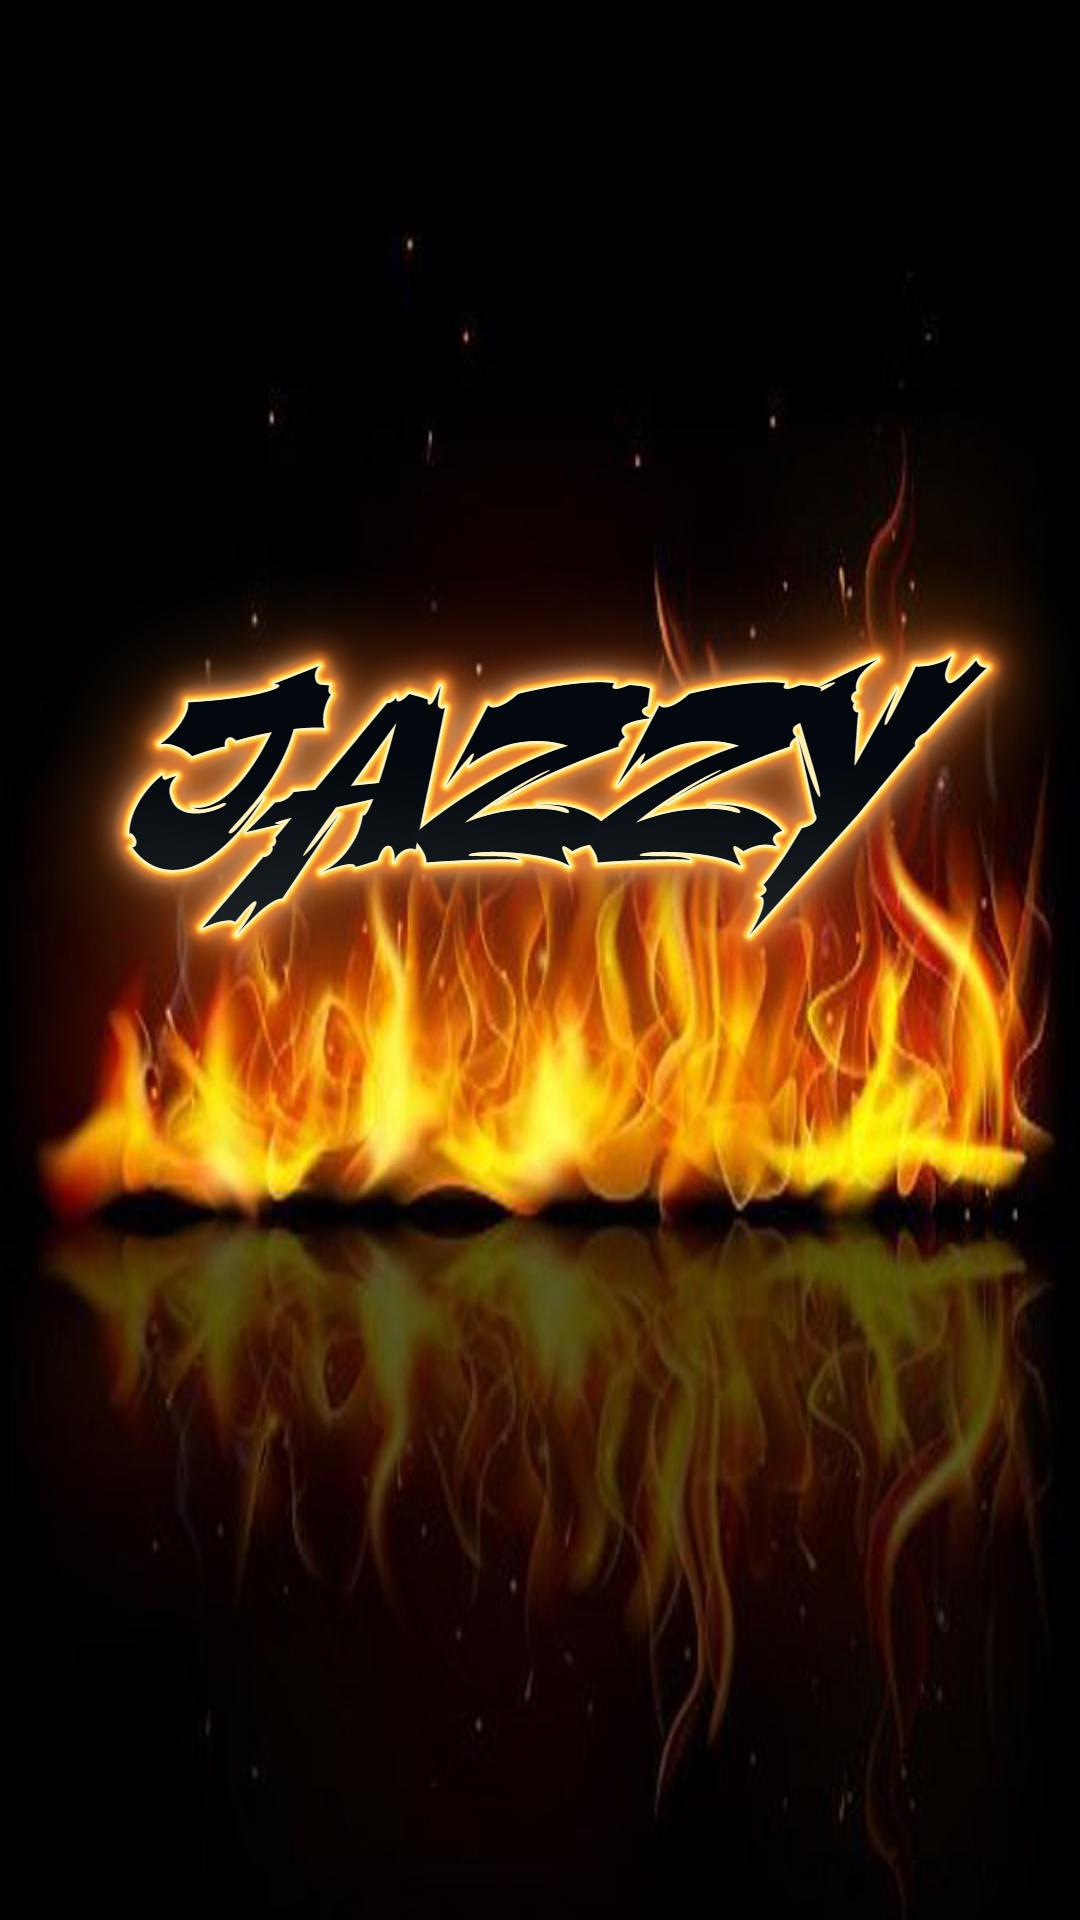 Jazzy As A Art Name Wallpaper Artnames